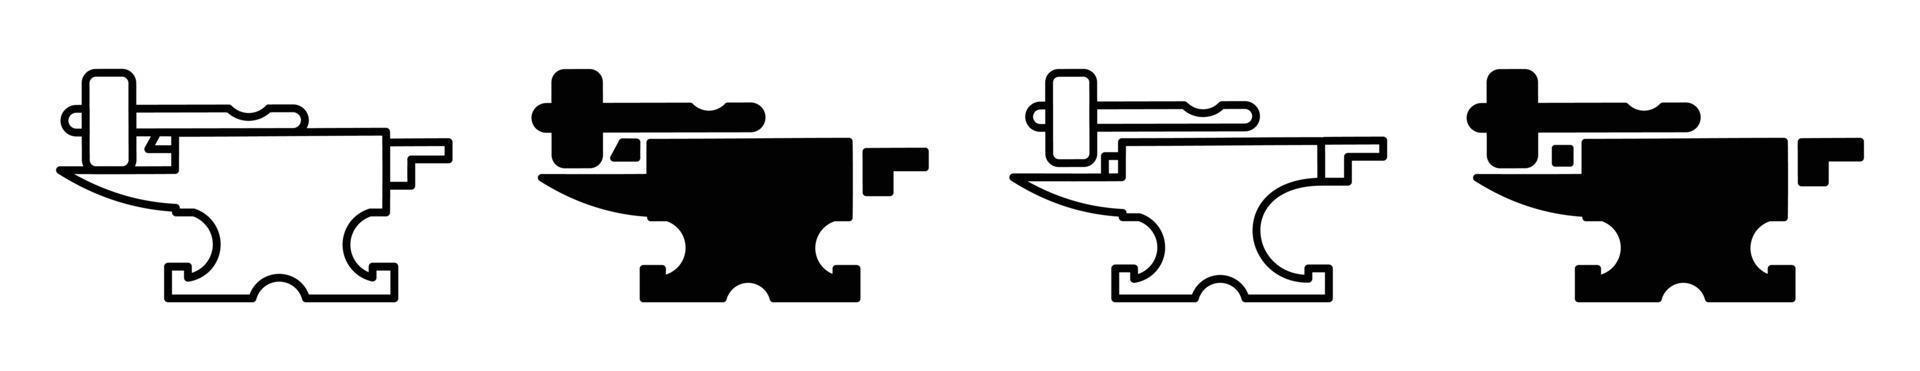 Schmied. Schmiede. Amboss- und Hammer-Logo-Design-Vorlage, einfaches Amboss-Design für Vektor-Icon-Illustration. Schmied, Schmiede-Logo-Vektor. vektor